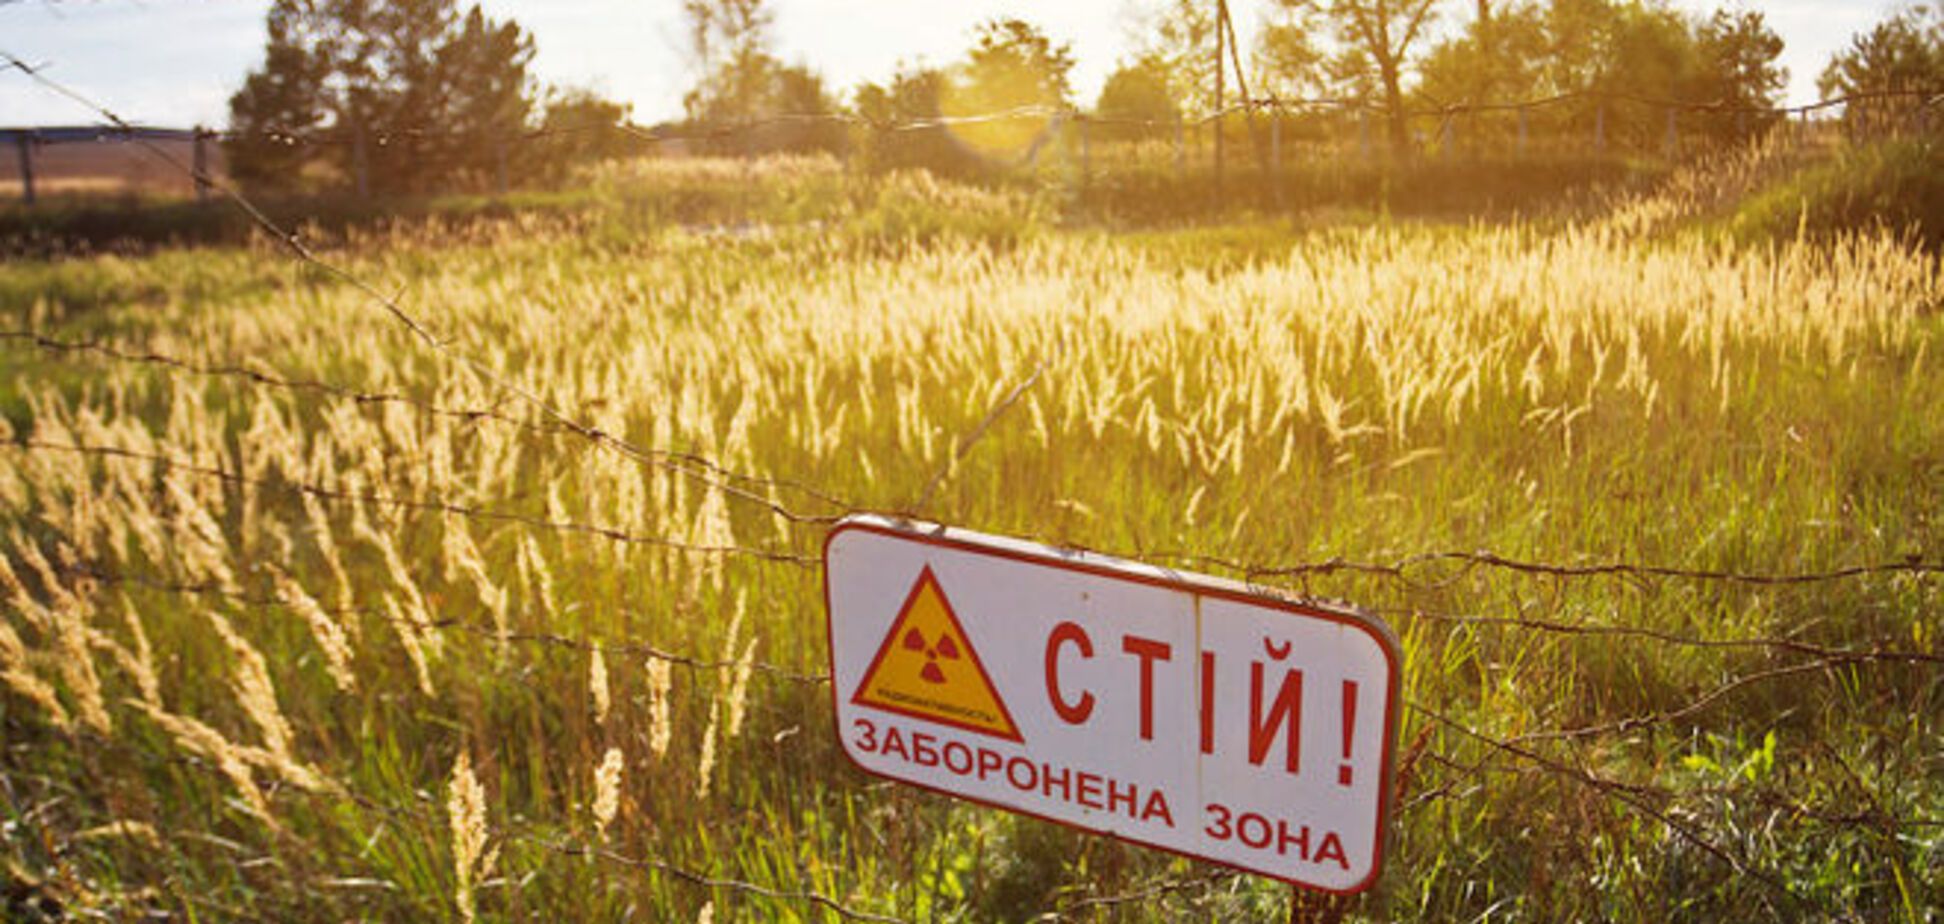 Яценюк хочет вывозить из Чернобыльской зоны дерево и металлолом